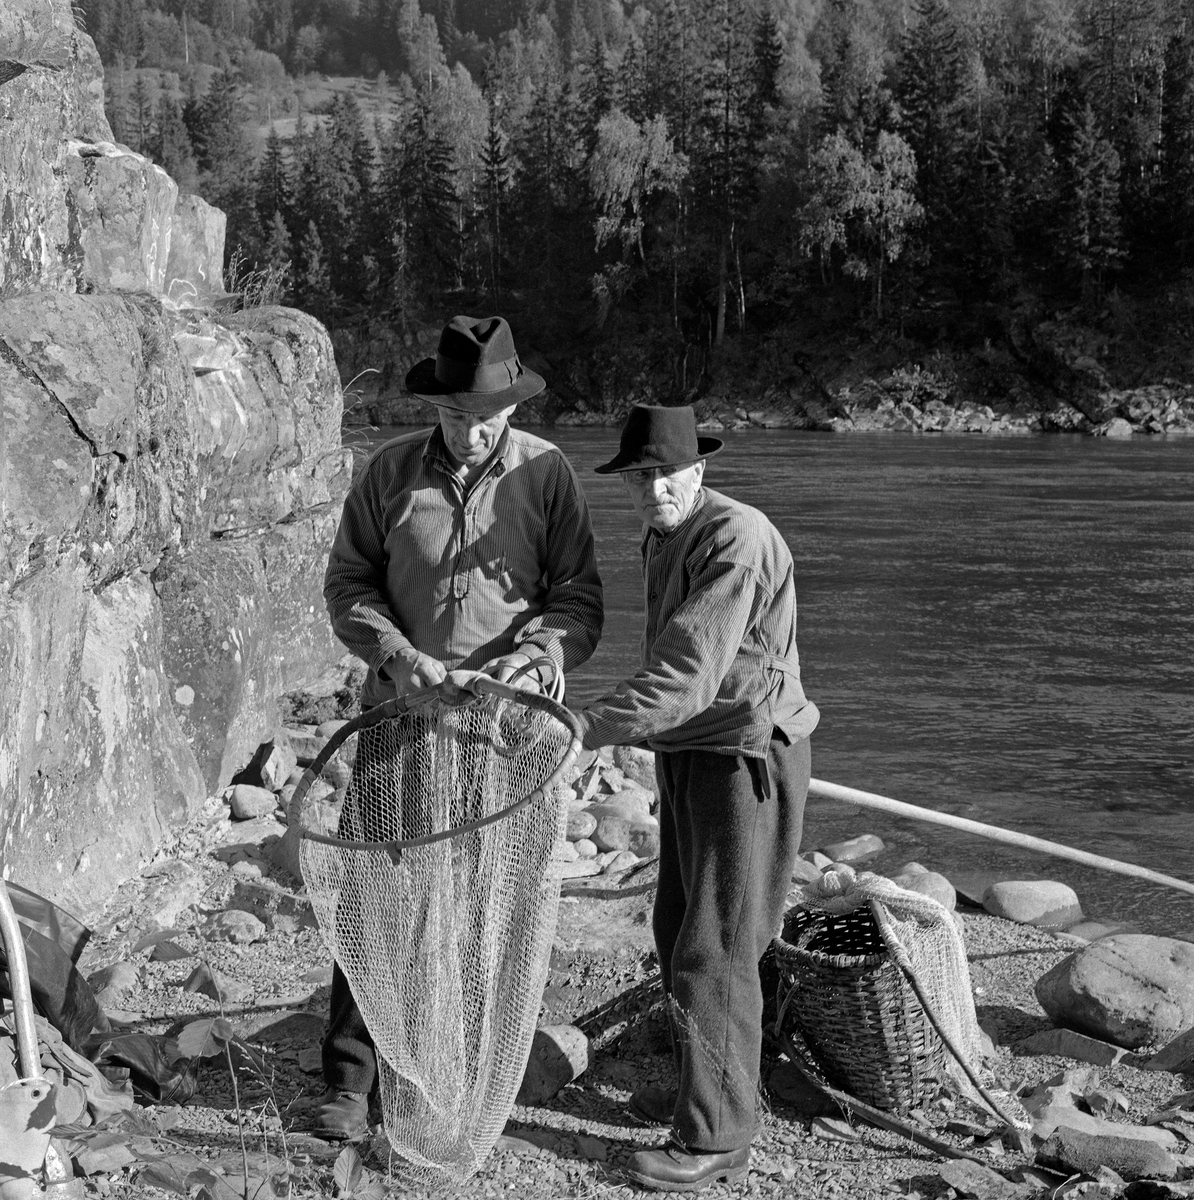 Lågåsildfiskerne Ole Haugen (1912-1982) og Arne O. Haugen (1883-1974), Oles far), fotografert ved bredden av Gudbrandsdalslågen, der de var i ferd med å binde «hugguet» på «rauna» (skaftet) til en stokkehåv.  Rauna var lagd av langsomtvokst, seig tennargran.  På stokkehåver brukte rauna å være 6,5 til 8,5 meter lang.  Håvhugguet ble lagd av grankvister  med litt stammeved i endene.  Denne stammeveden som ble brukt som anlegg på enden av rauna.  Kvistene ble bøyt mot hverandre, slik at de dannet ei bøyle, som «påsan» kunne bindes på.  Sammenføyinga ble gjort ved hjelp av et par spikere og påsurret tau eller, som her, splittet bambus.  Påsan var et nett, bundet av lin.   Bak karene ser vi et flettet bæreredskap, en såkalt «snik», som ble brukt som beholder for fangsten.   Både far og sønn Haugen var kledd i vadmelsbukser og busserull, og de brukte svarte, vidbremmete hatter som hodeplagg.

Stokkehåven ble brukt fra en båt - ei «åfløy» - som var forankret i en stokk, som i sin tur var festet i stein i elveløpet.  Deler av fiskeribiologen Hartvig Huitfedt-Kaas' beskrivelse av håvene og stokkhåvfisket fra 1917 er gjengitt under fanen «Opplysninger».